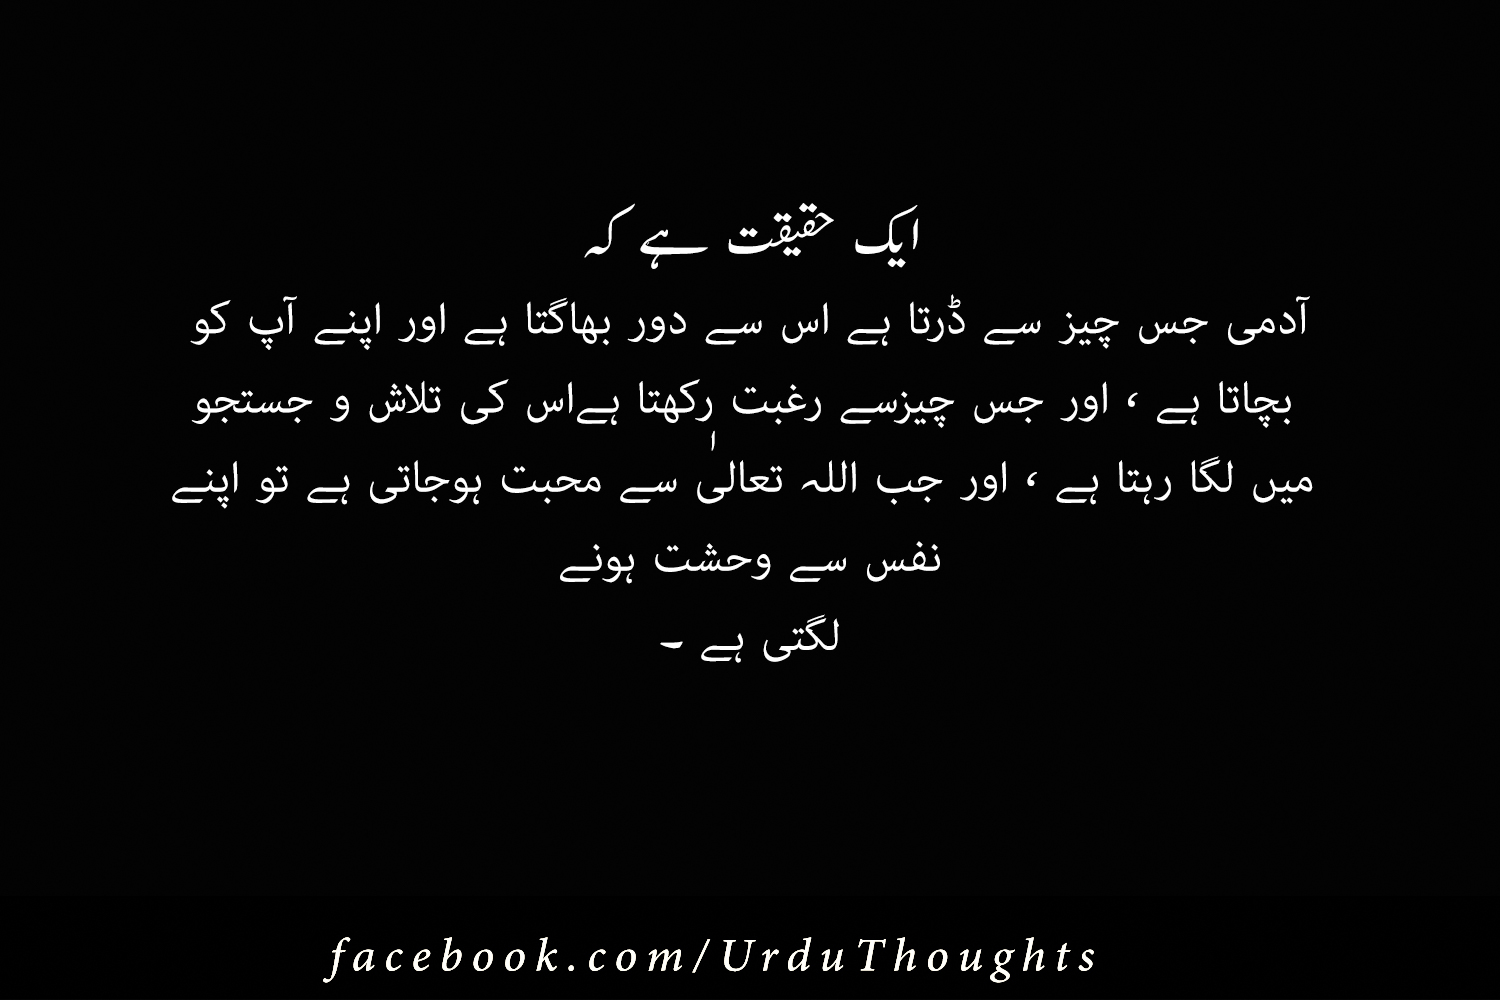 20+ Inspirational Islamic Quotes Images in Urdu - Urdu ...